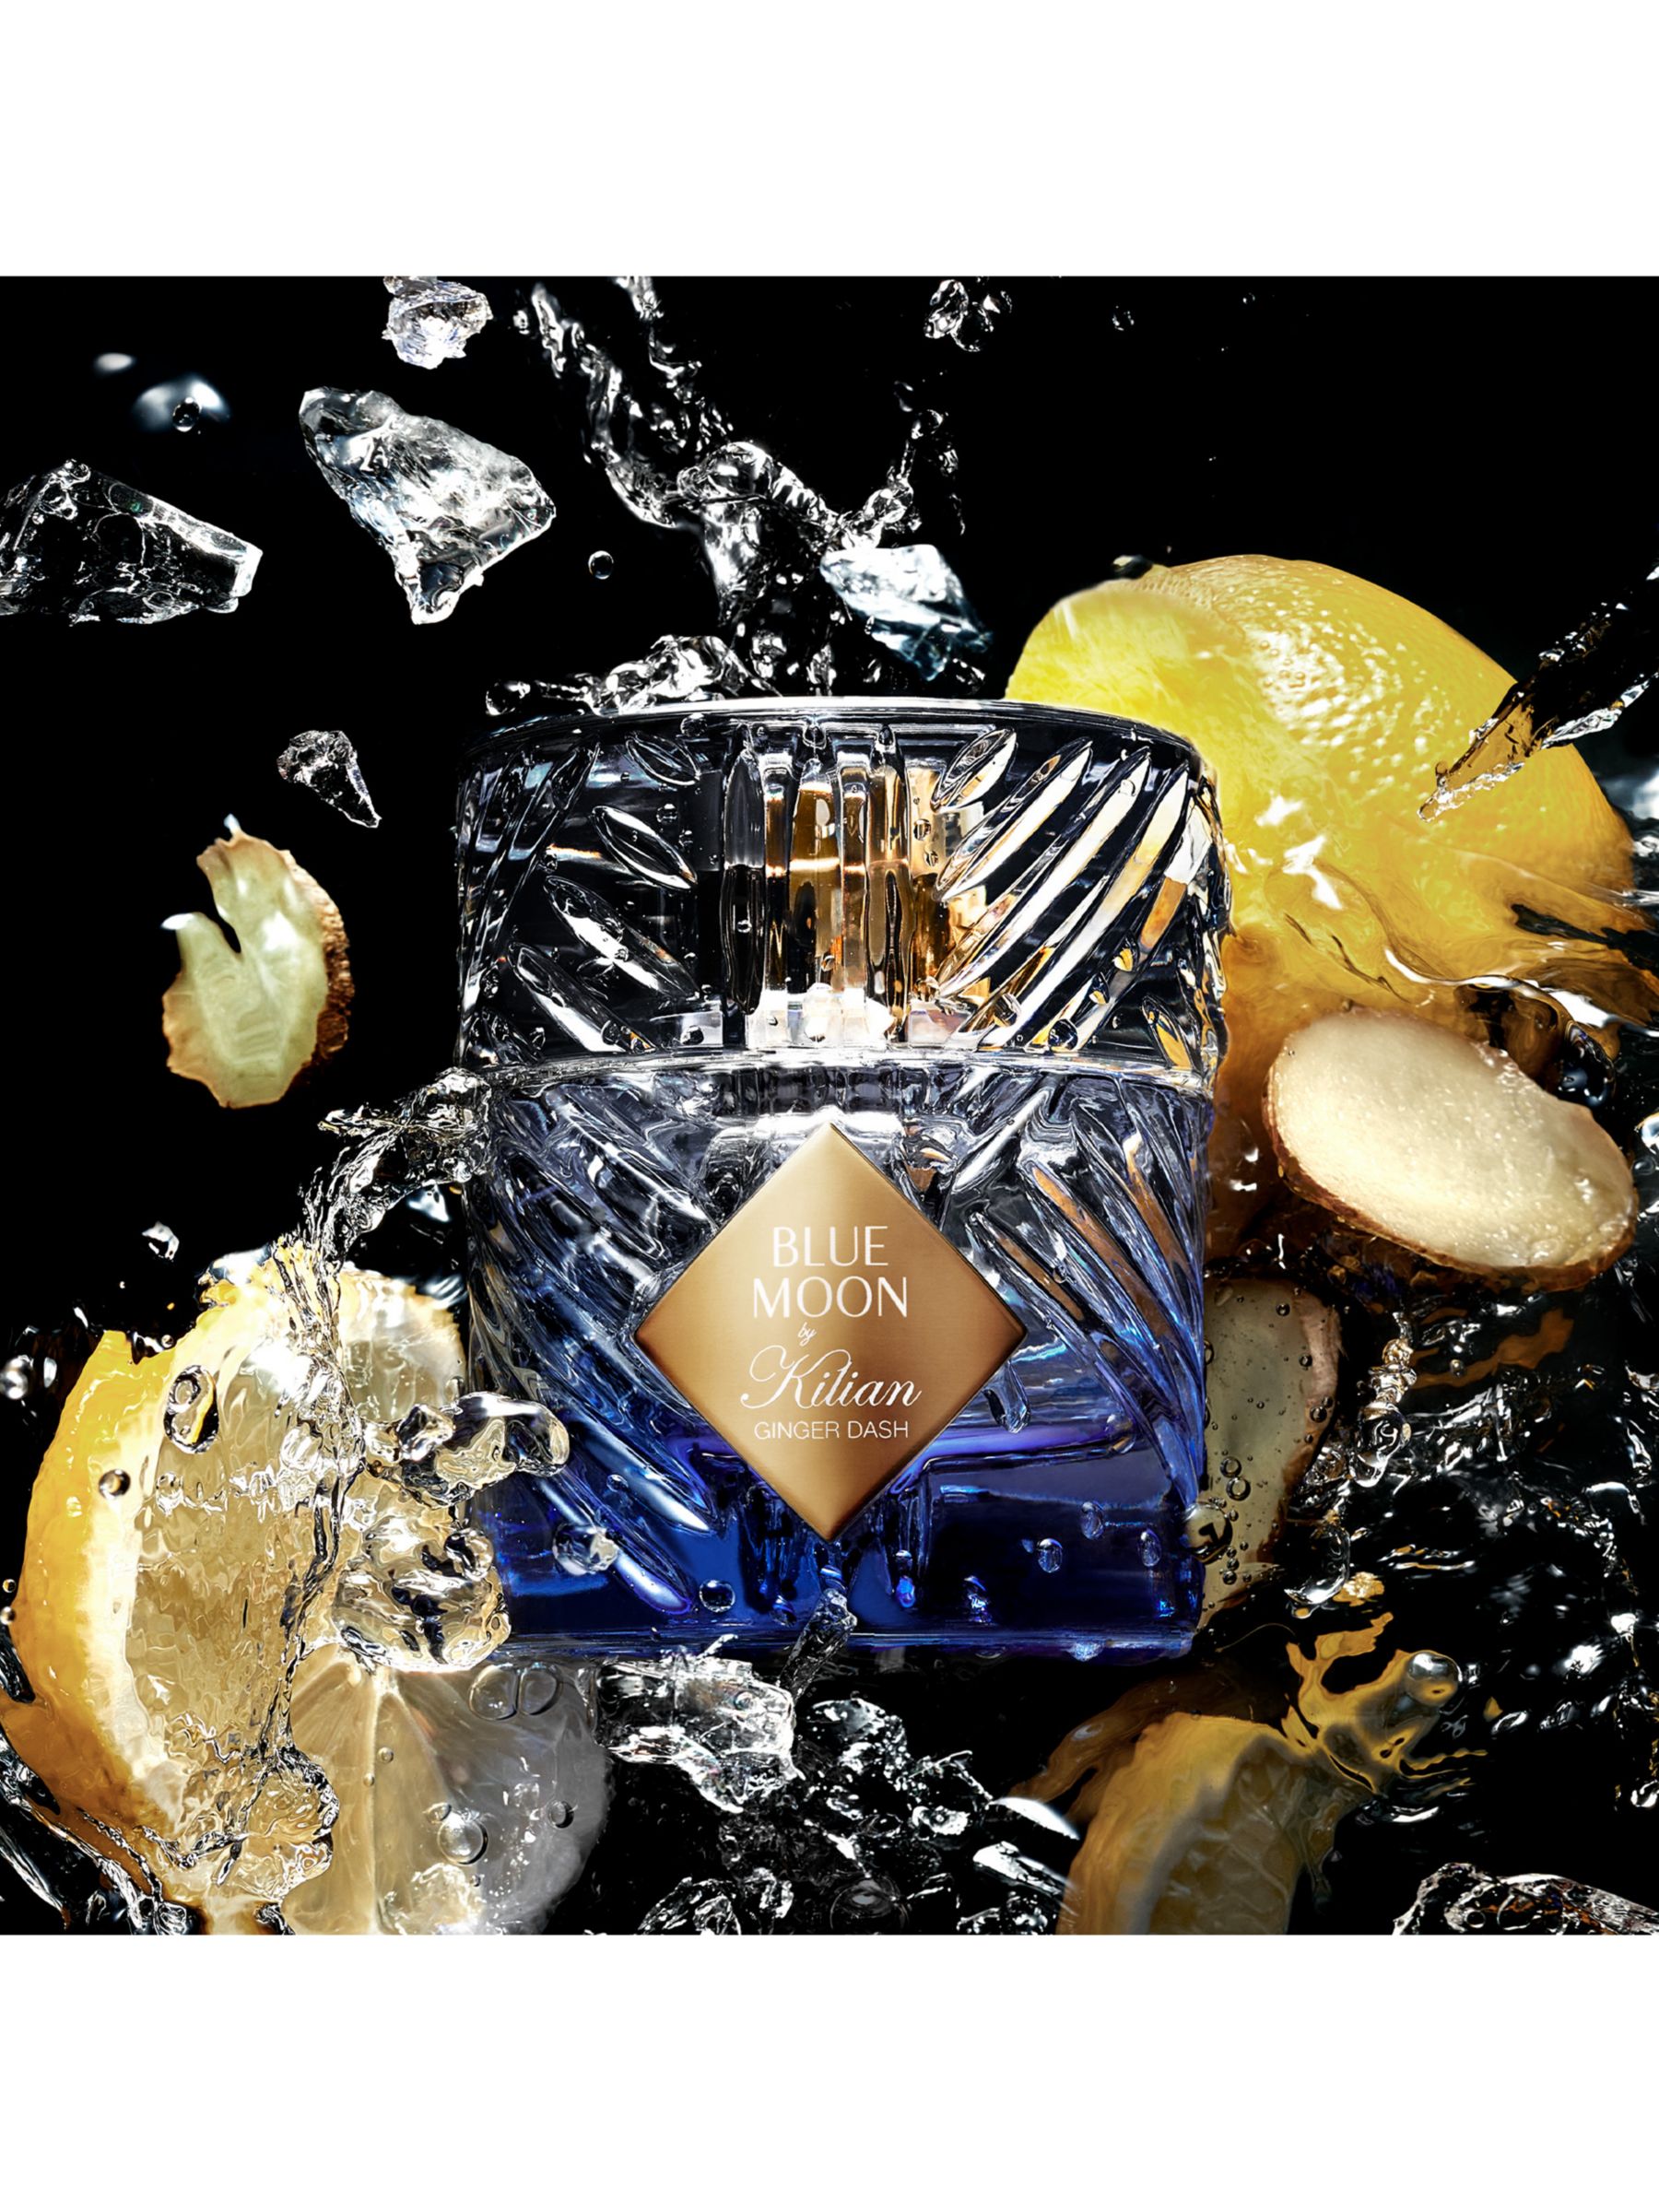 KILIAN PARIS Blue Moon Ginger Dash Eau de Parfum, 50ml 3